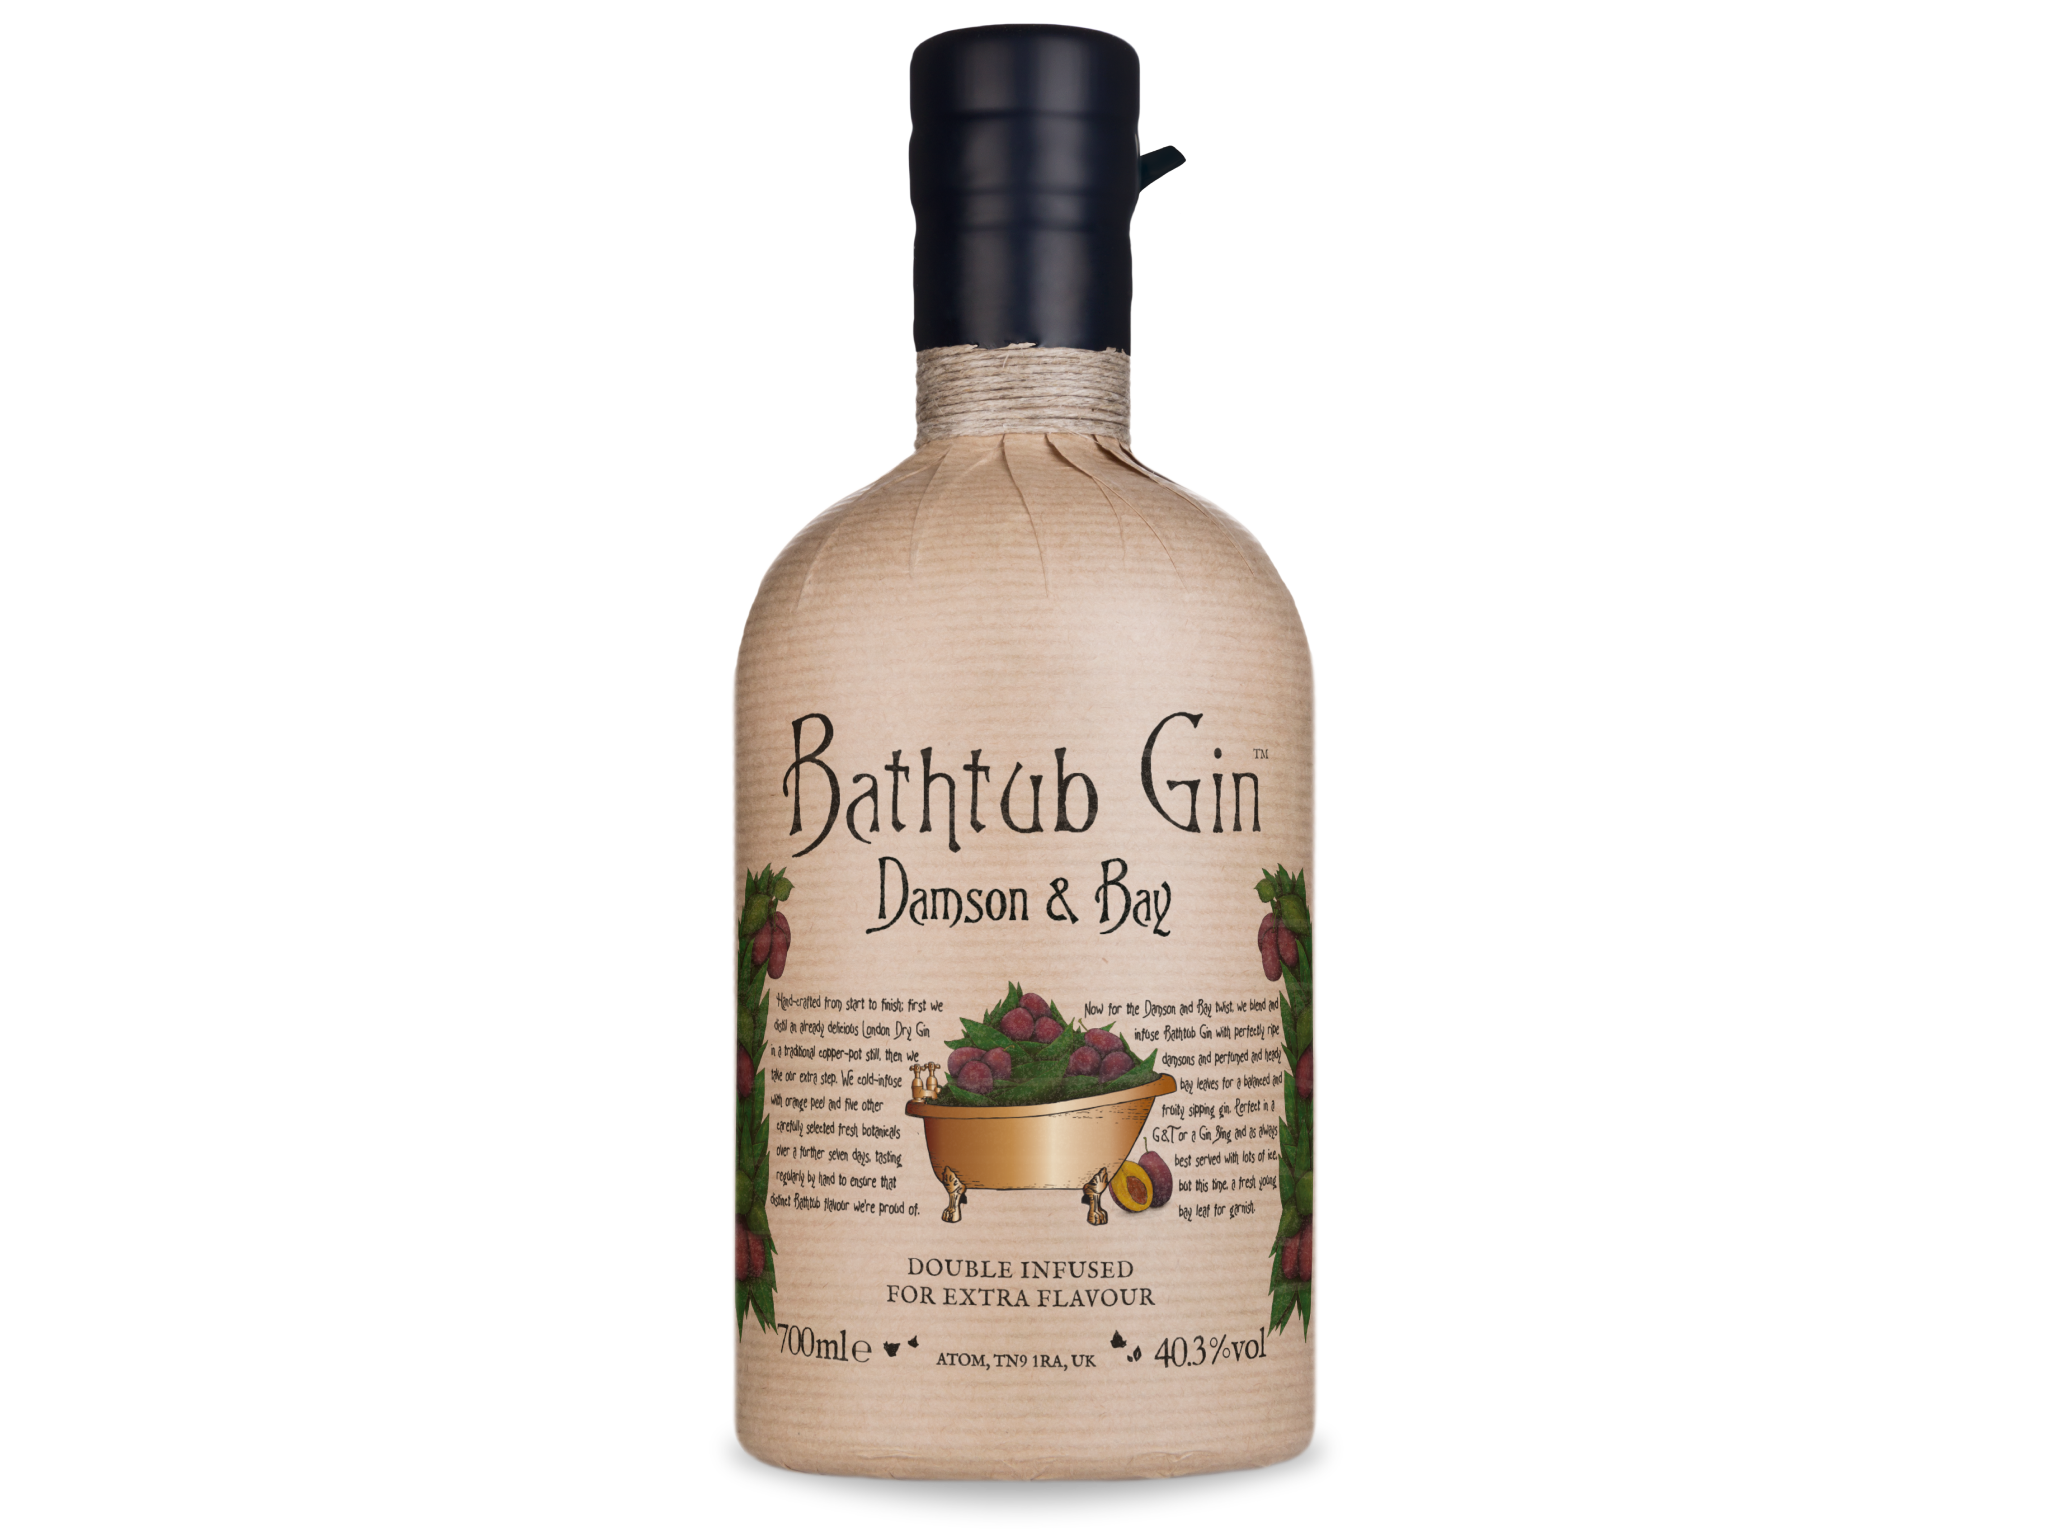 Bathtub-gin-damson&bay-flavoured-gins-indybest